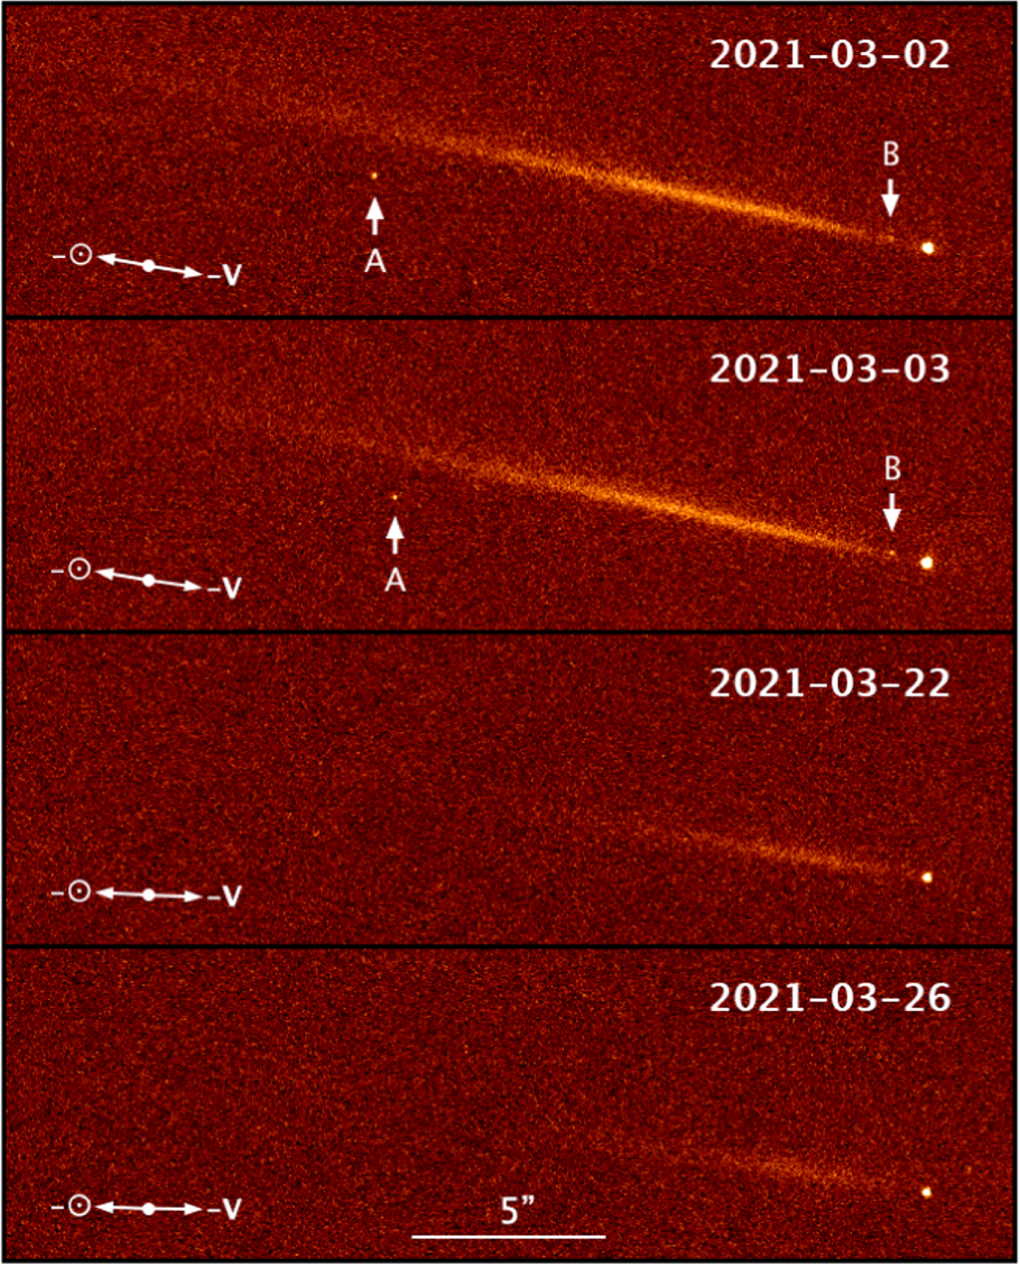 Фрагменти комети, які помітив «Габбл» у березні 2021. Позначені як «А» і «В». Man-To Hui et al. / The Astronomical Journal, 2022